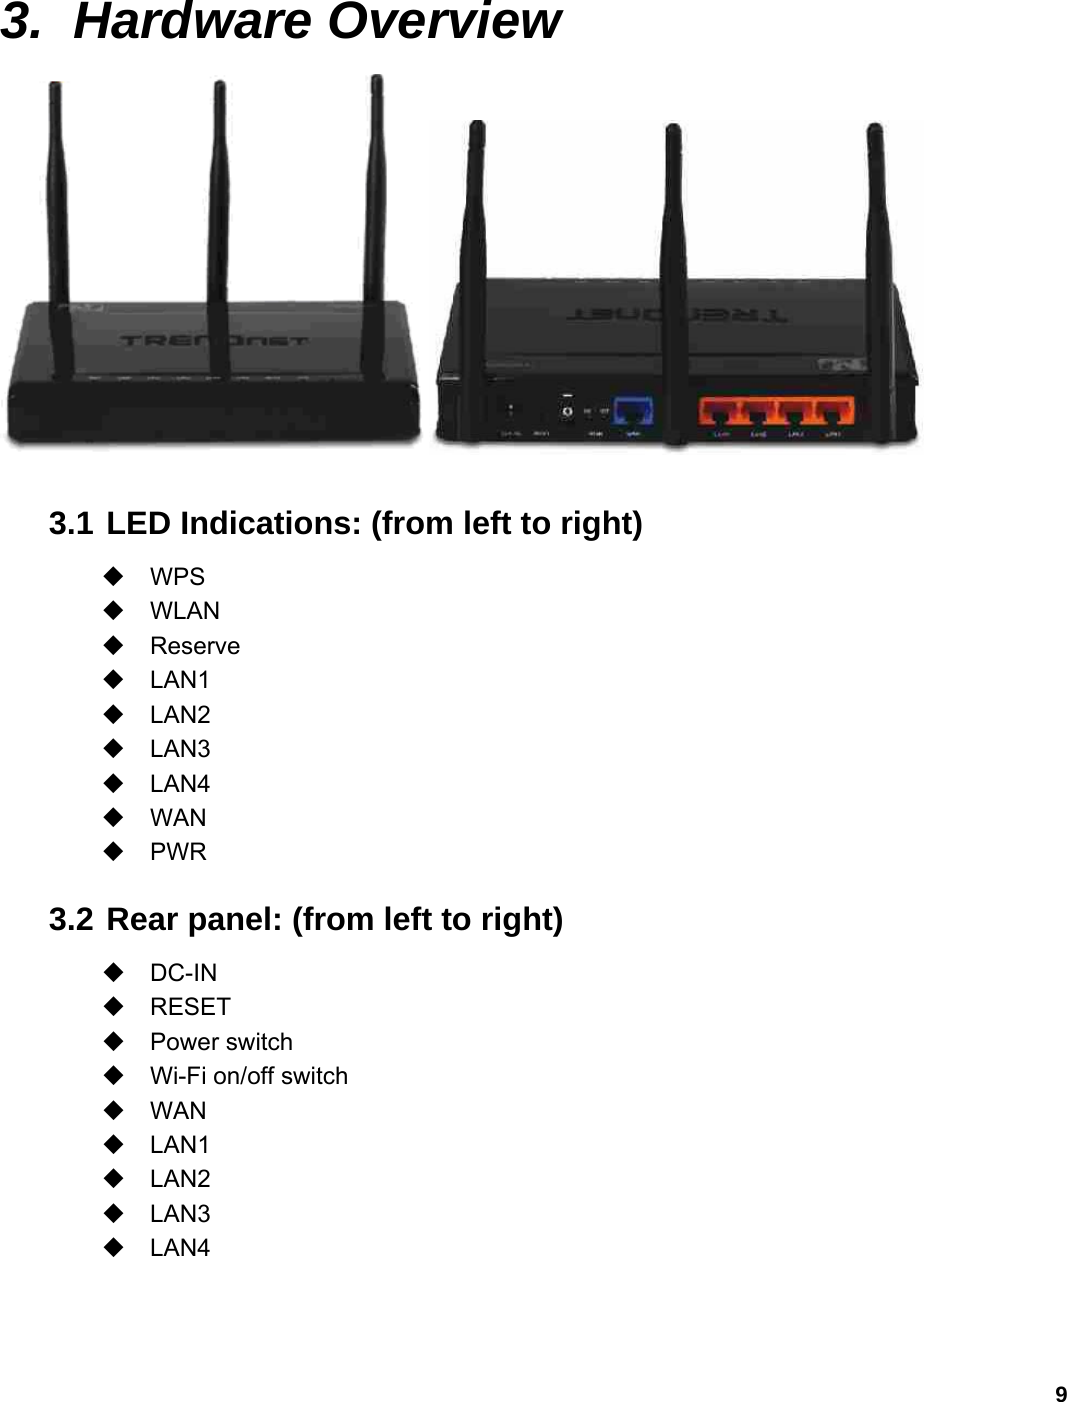 9  3. Hardware Overview   3.1 LED Indications: (from left to right)  WPS  WLAN  Reserve  LAN1  LAN2  LAN3  LAN4  WAN  PWR 3.2 Rear panel: (from left to right)  DC-IN  RESET  Power switch  Wi-Fi on/off switch  WAN  LAN1  LAN2  LAN3  LAN4   